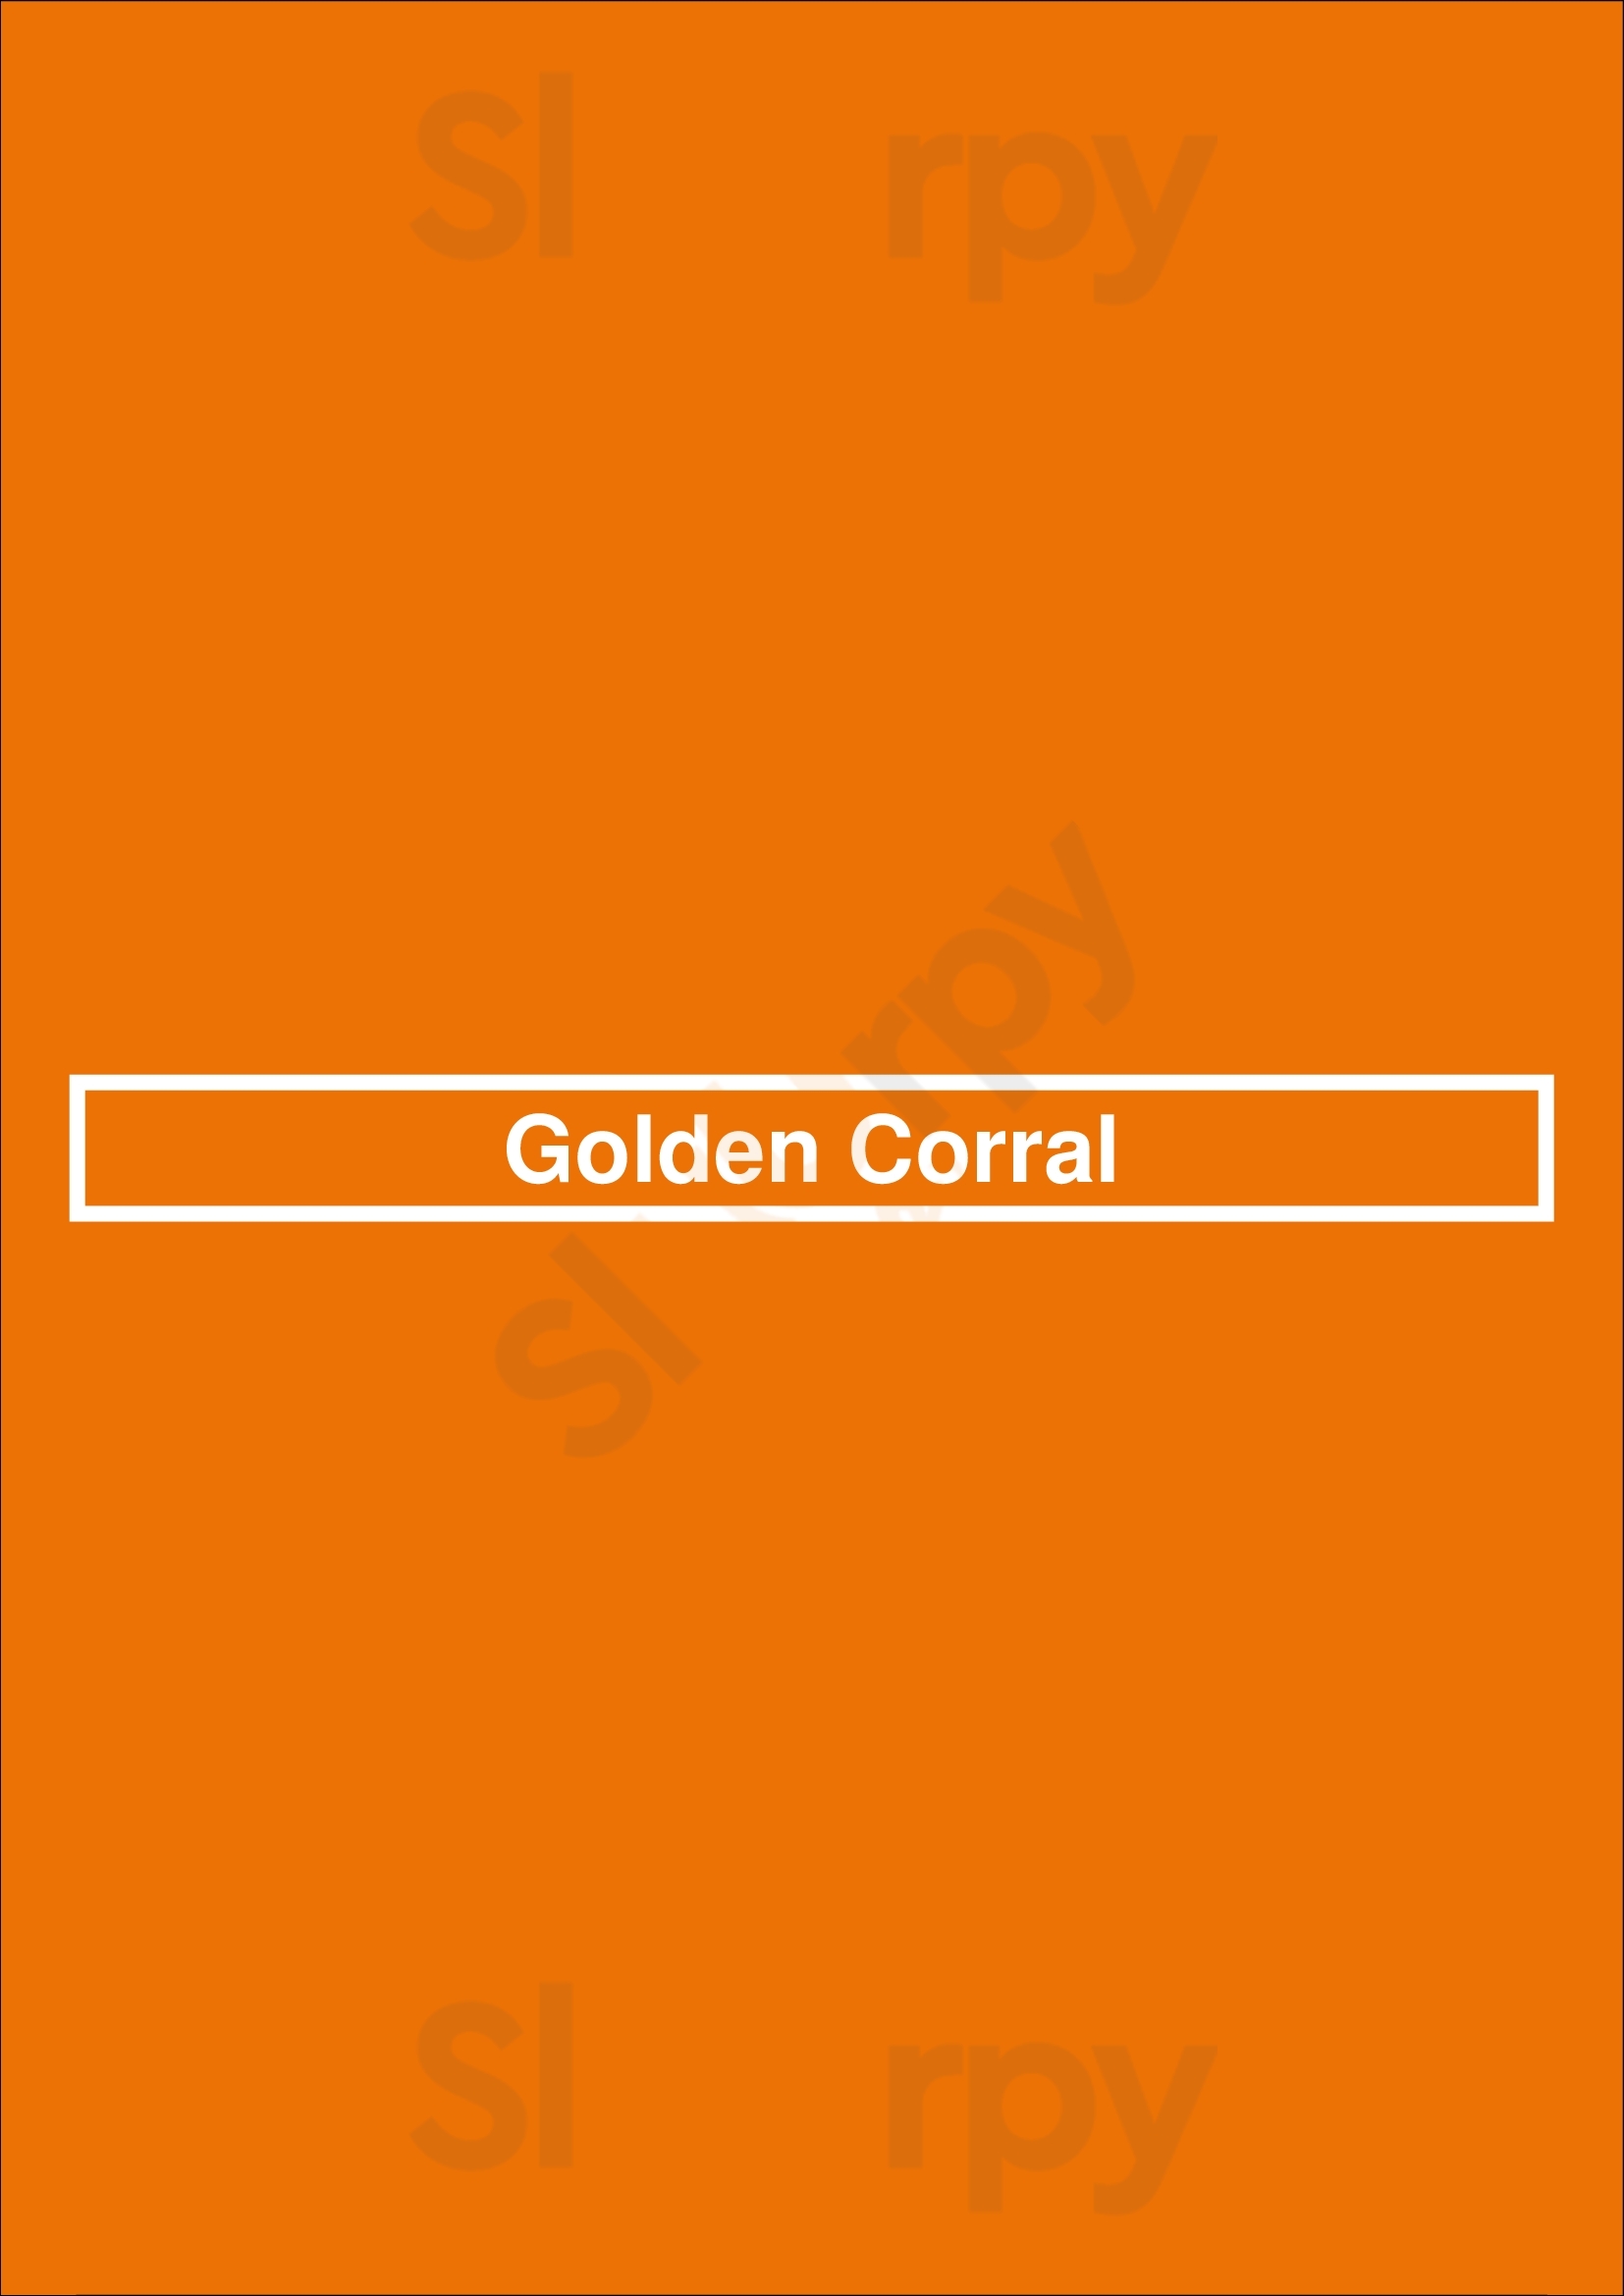 Golden Corral Oklahoma City Menu - 1